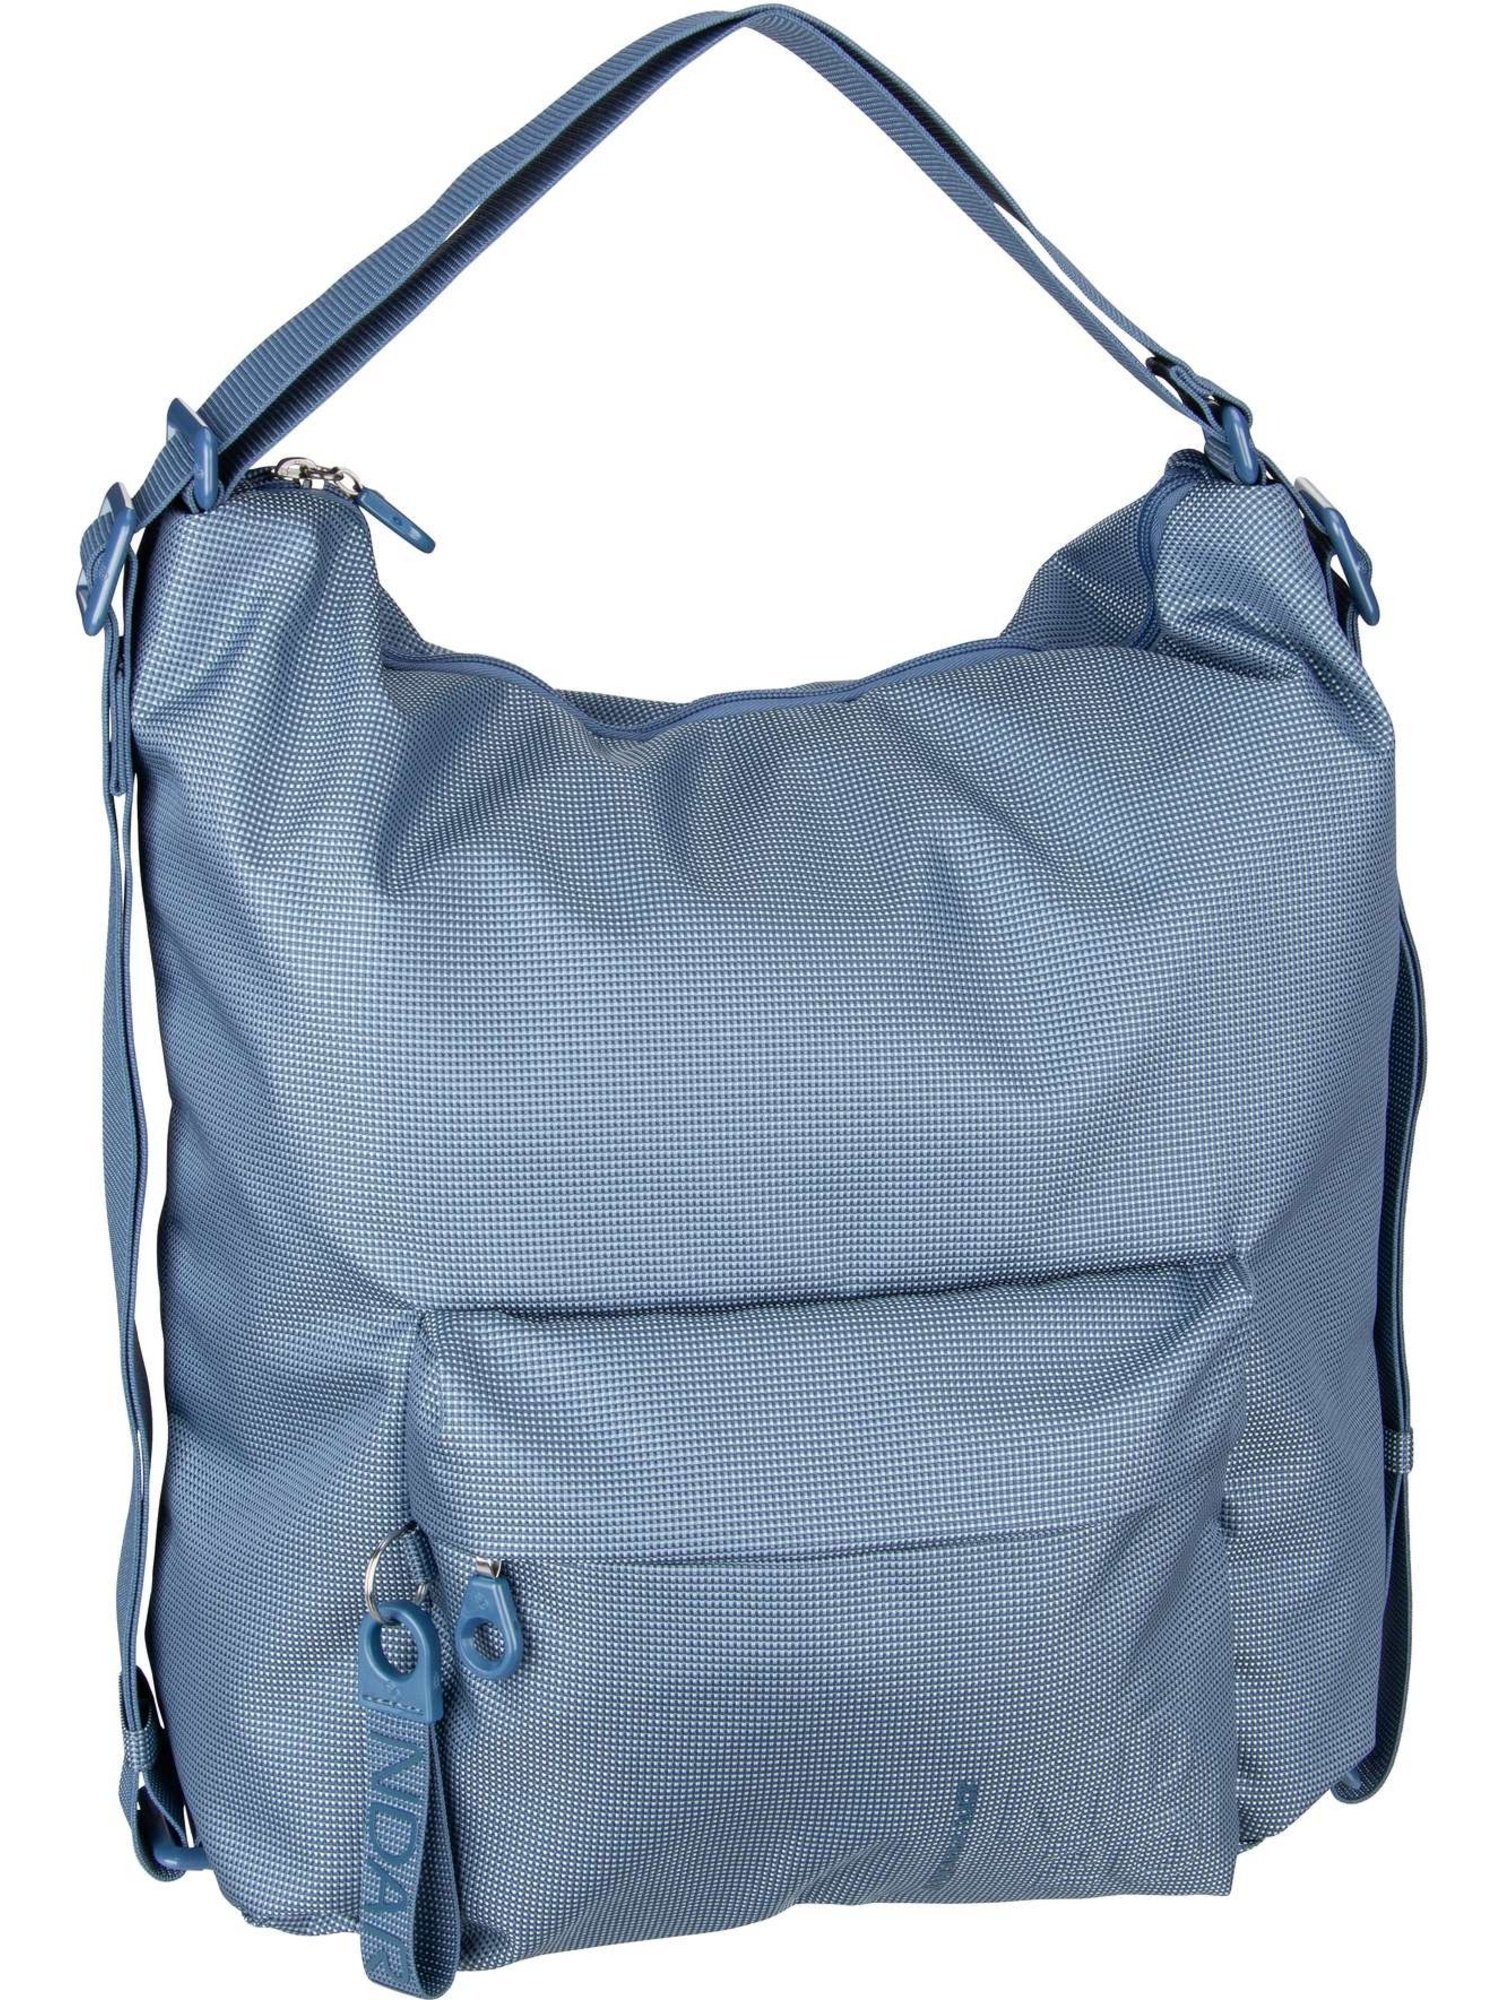 Mandarina Duck Handtasche MD20 Hobo Backpack QMT09, 2in1 Rucksack-Tasche